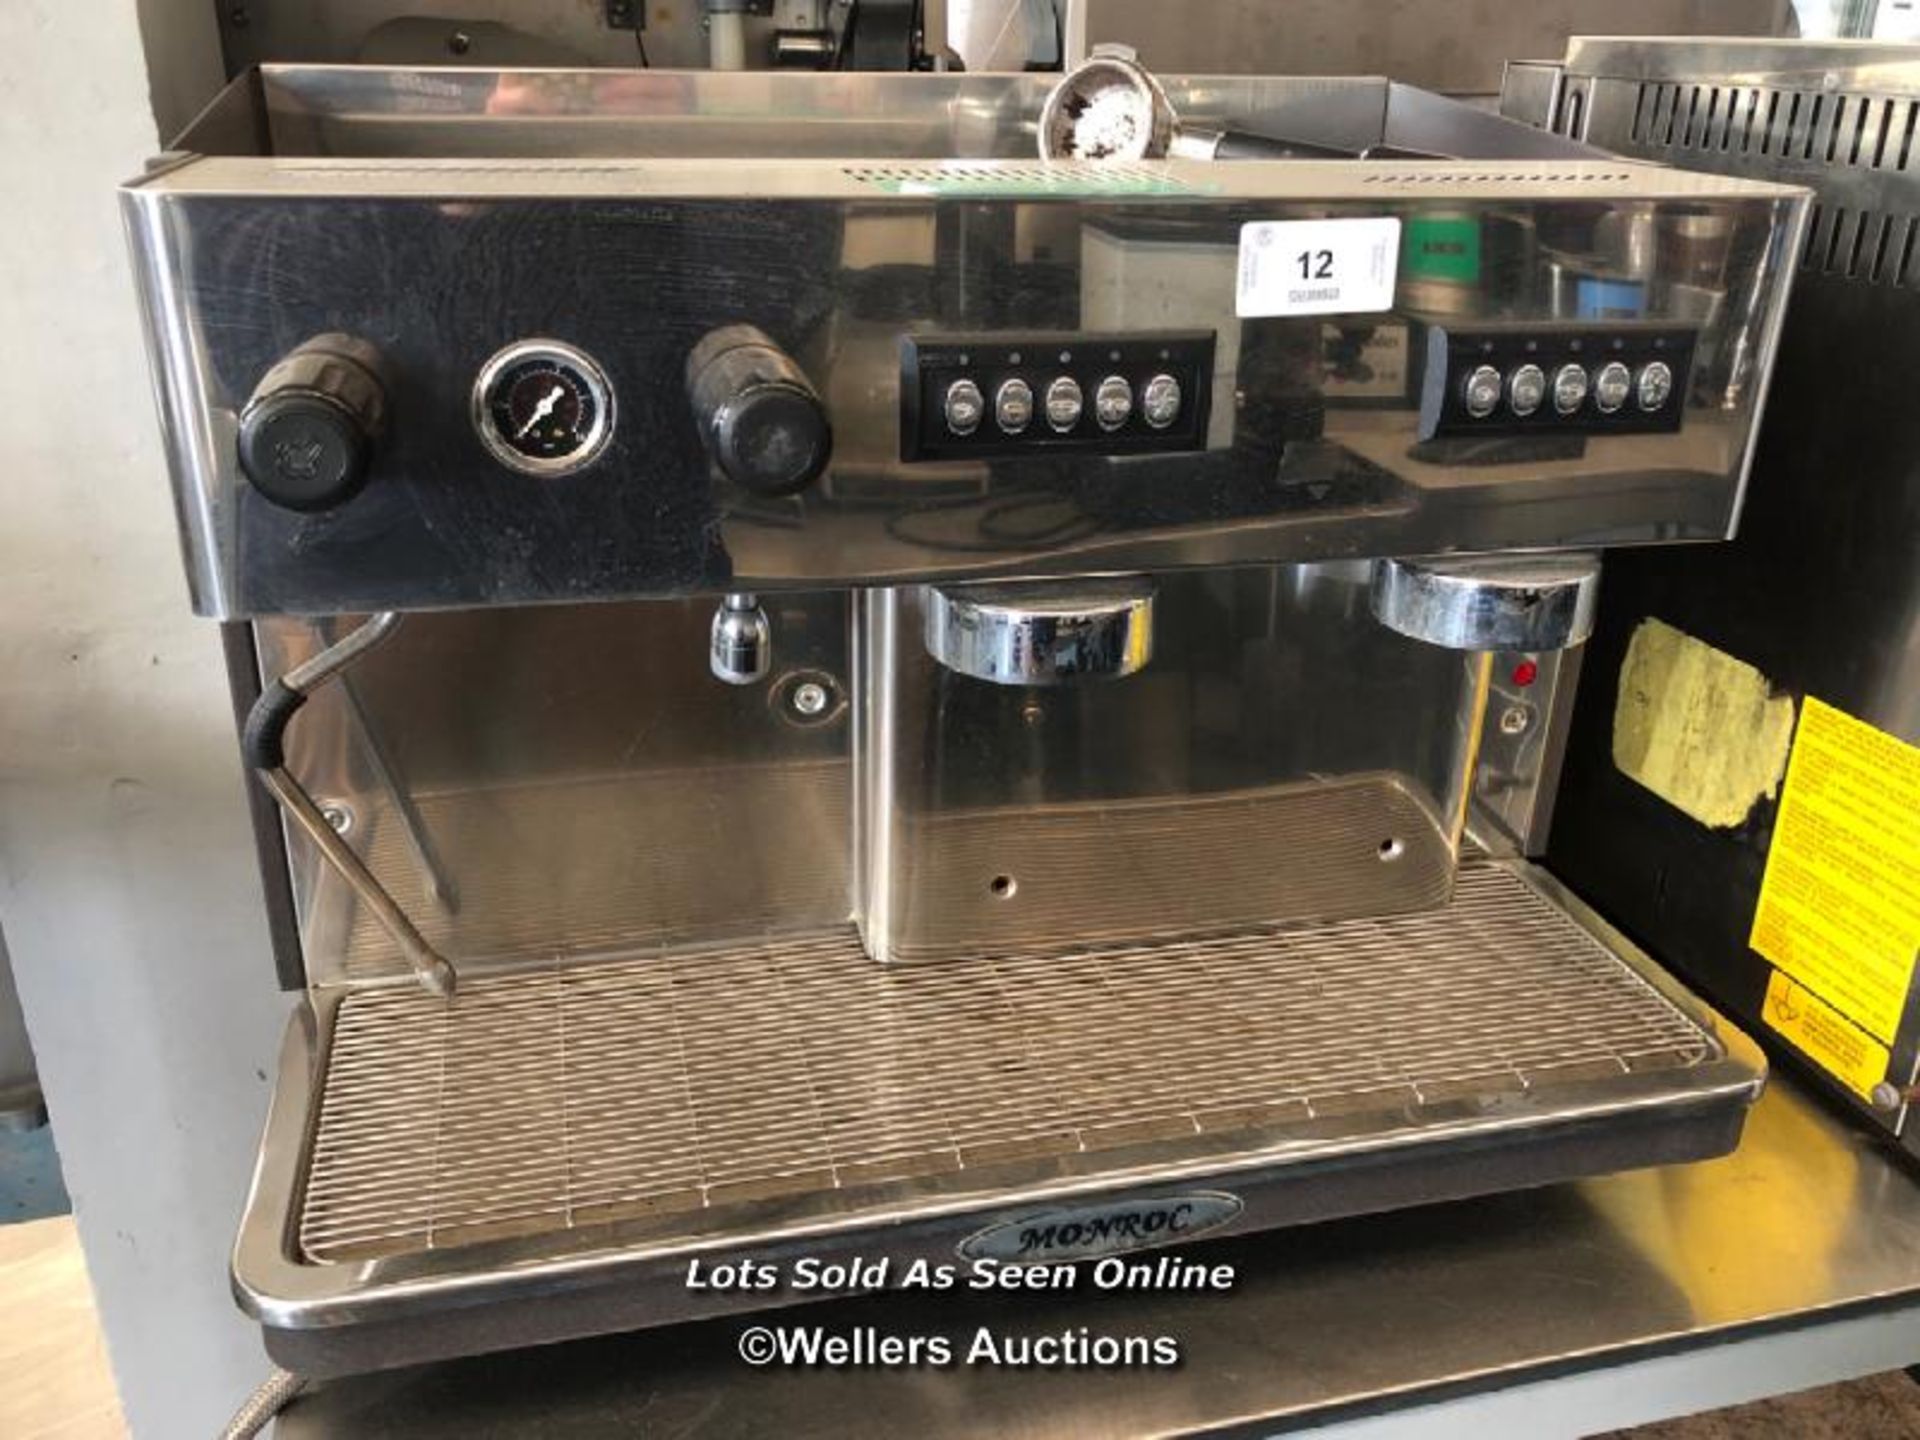 MONROC COMMERCIAL COFFEE MACHINE, 45CM (H) X 65CM (W) X 54CM (D) / COLLECTION LOCATION: PETERBOROUGH